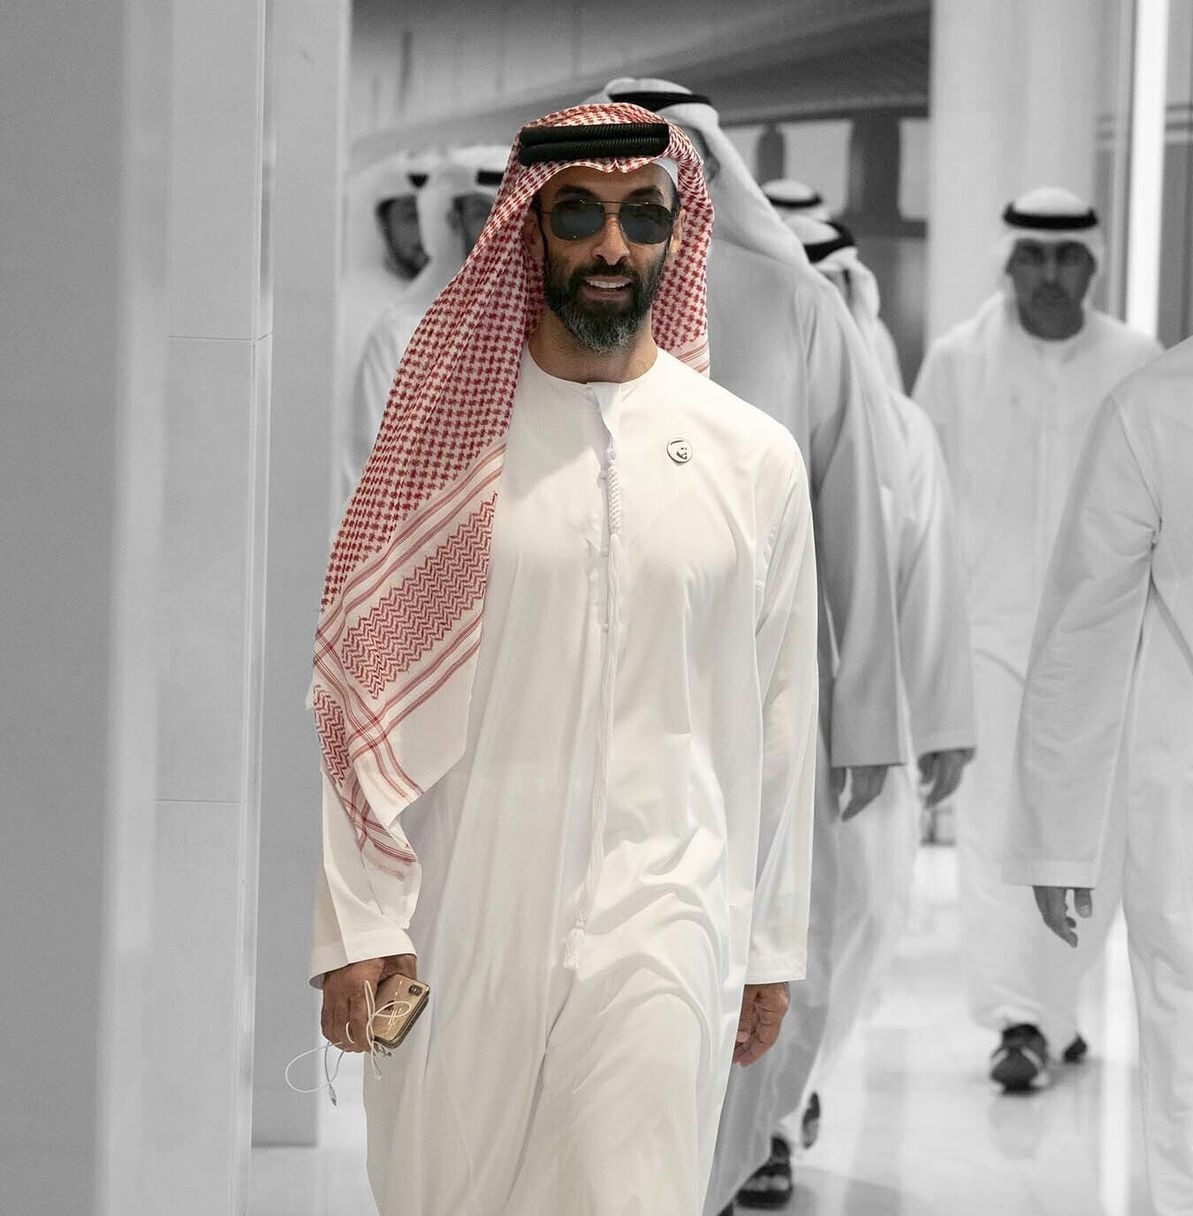 Gia tộc giàu có nhất Abu Dhabi đang đổ tiền vào đâu - ảnh 1